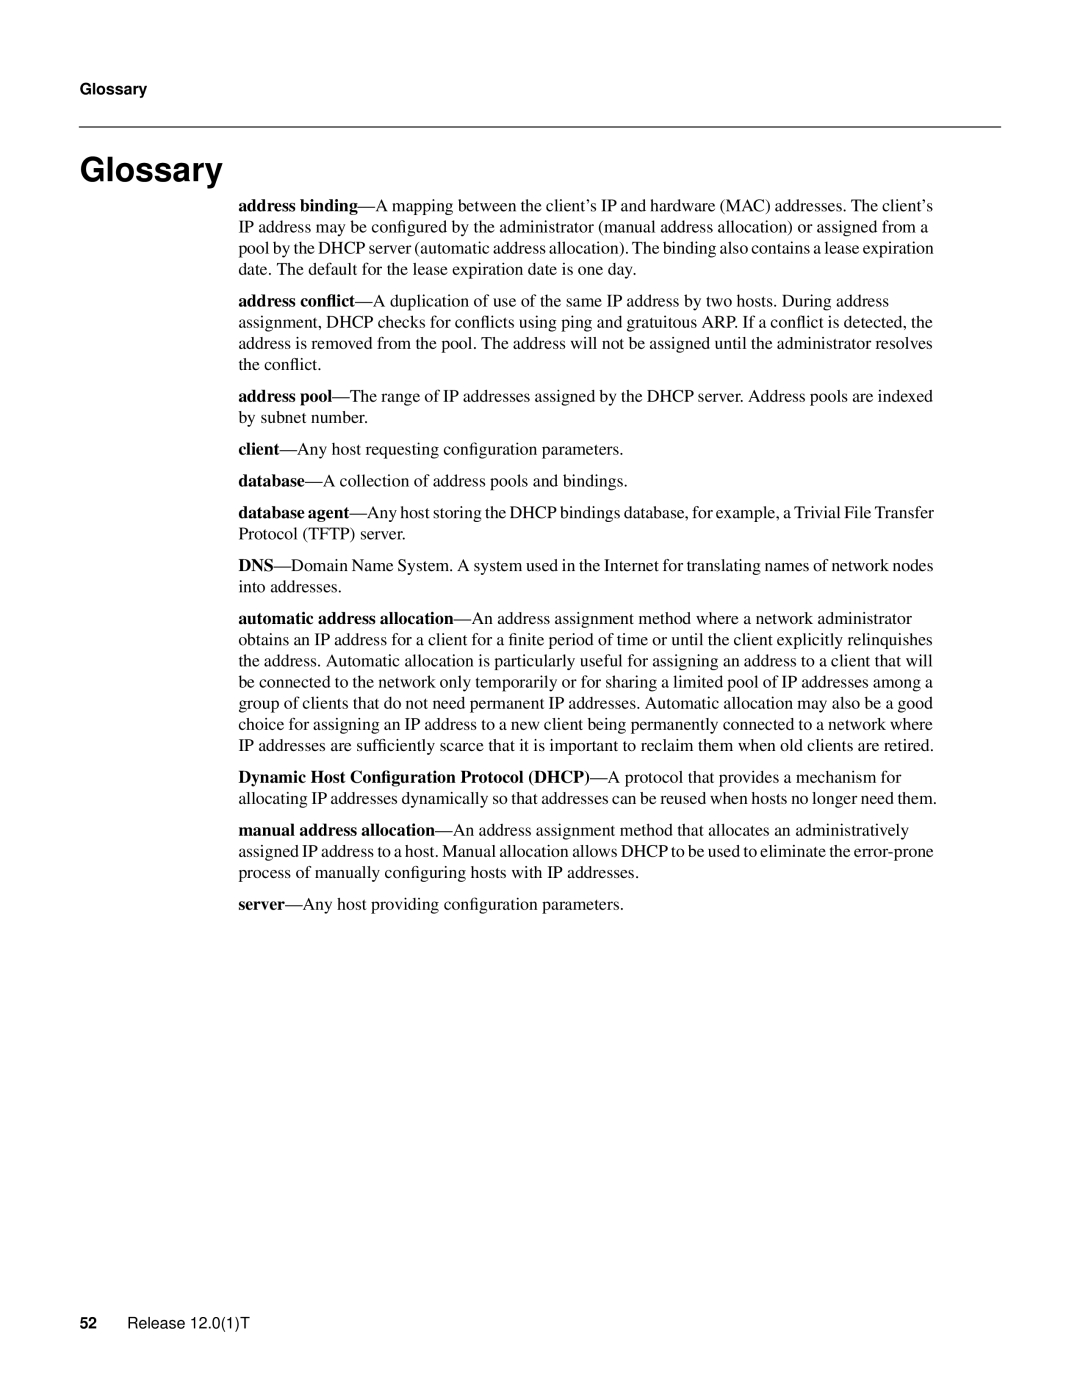 Cisco Systems 32369 manual Glossary 